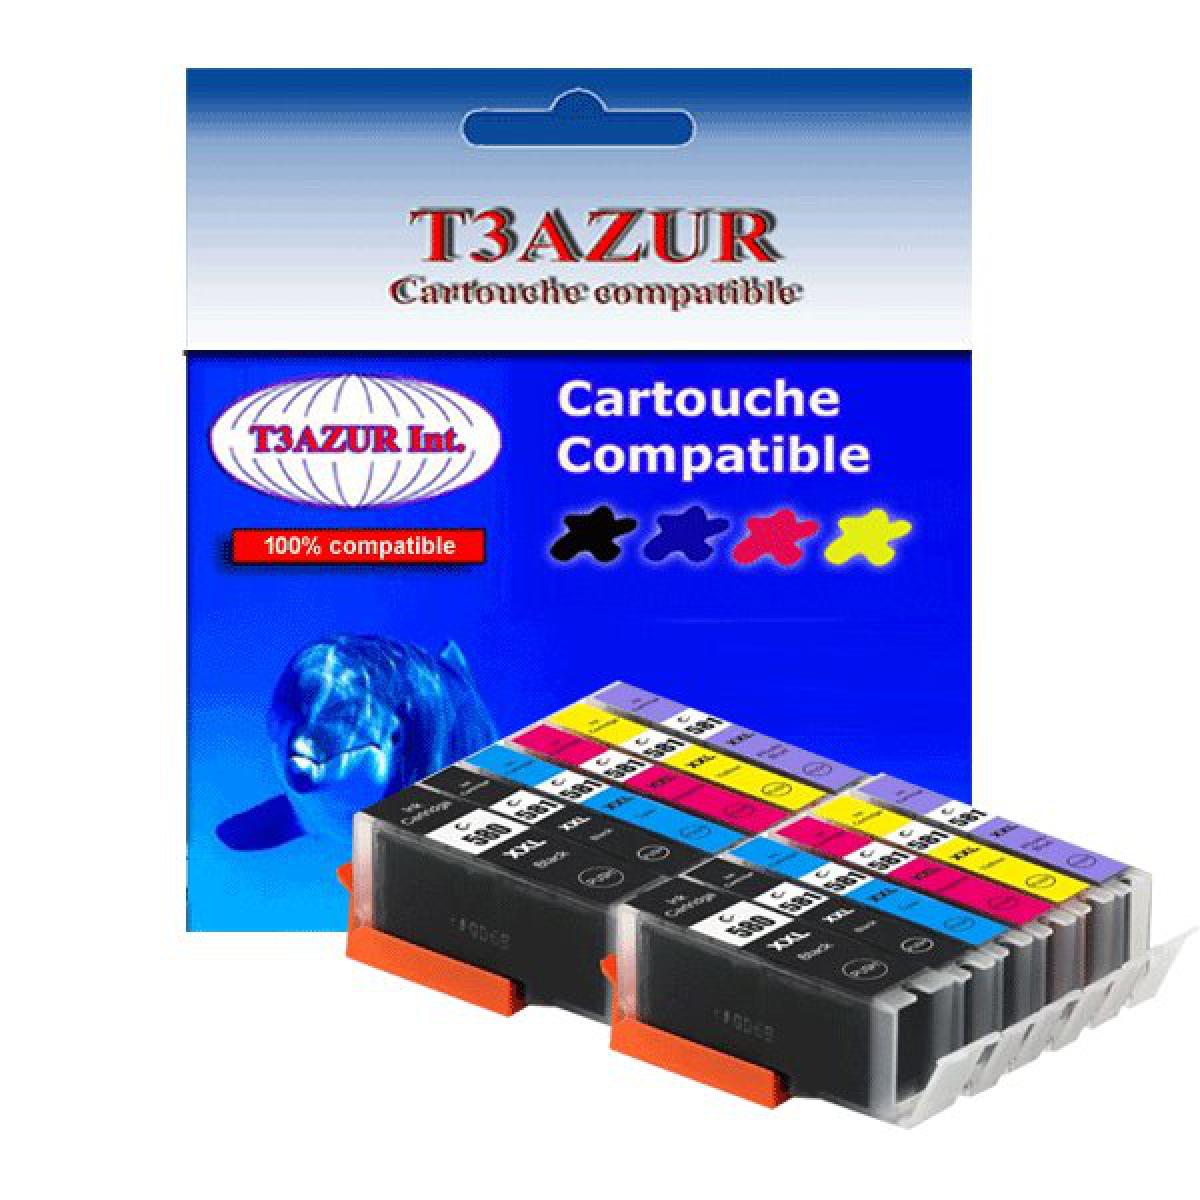 T3Azur Lot de 12 Cartouches Compatibles pour Canon Pixma TS8300, TS8350 - T3AZUR